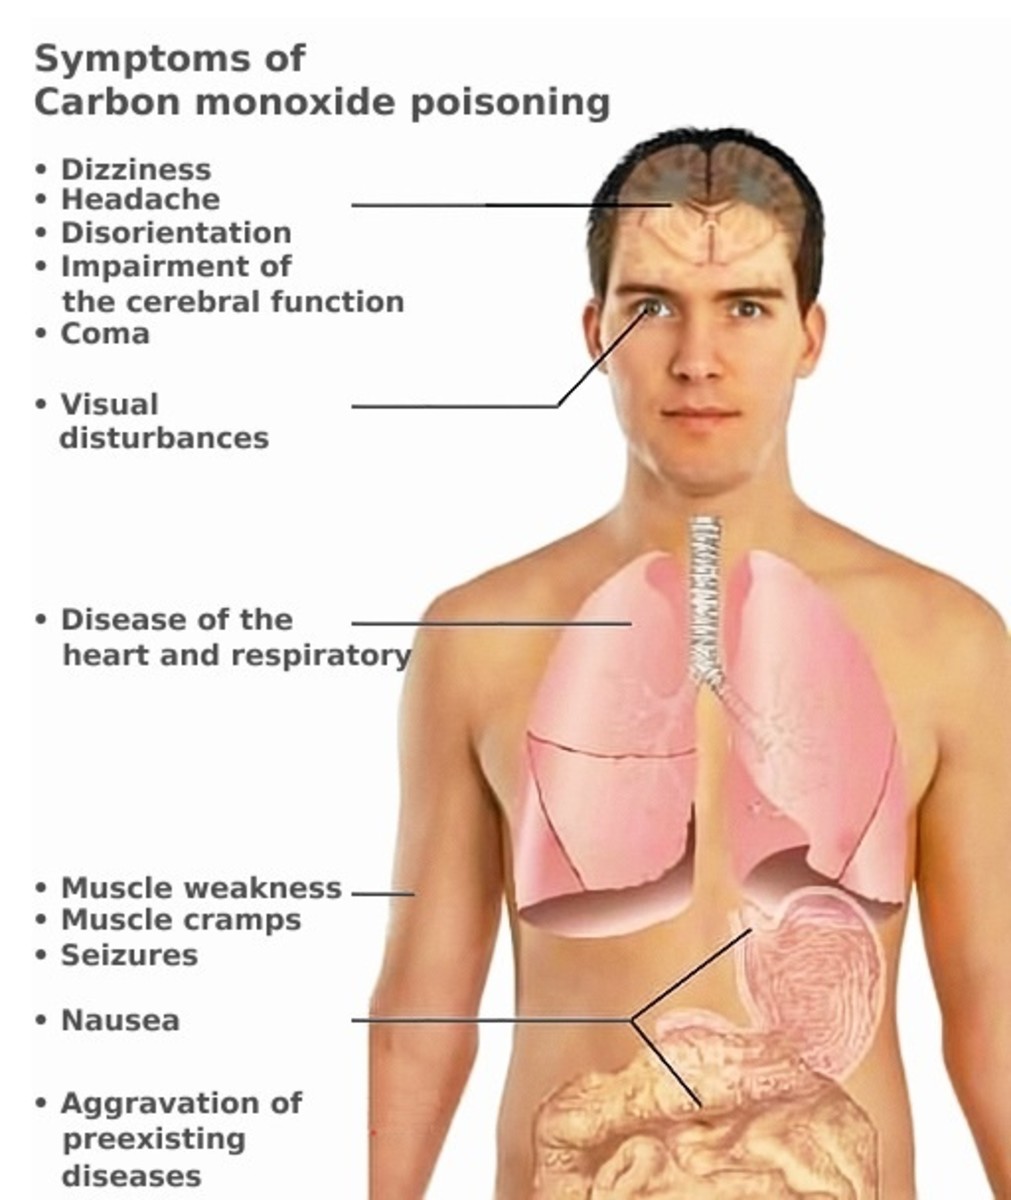 Potential symptoms of carbon monoxide poisoning